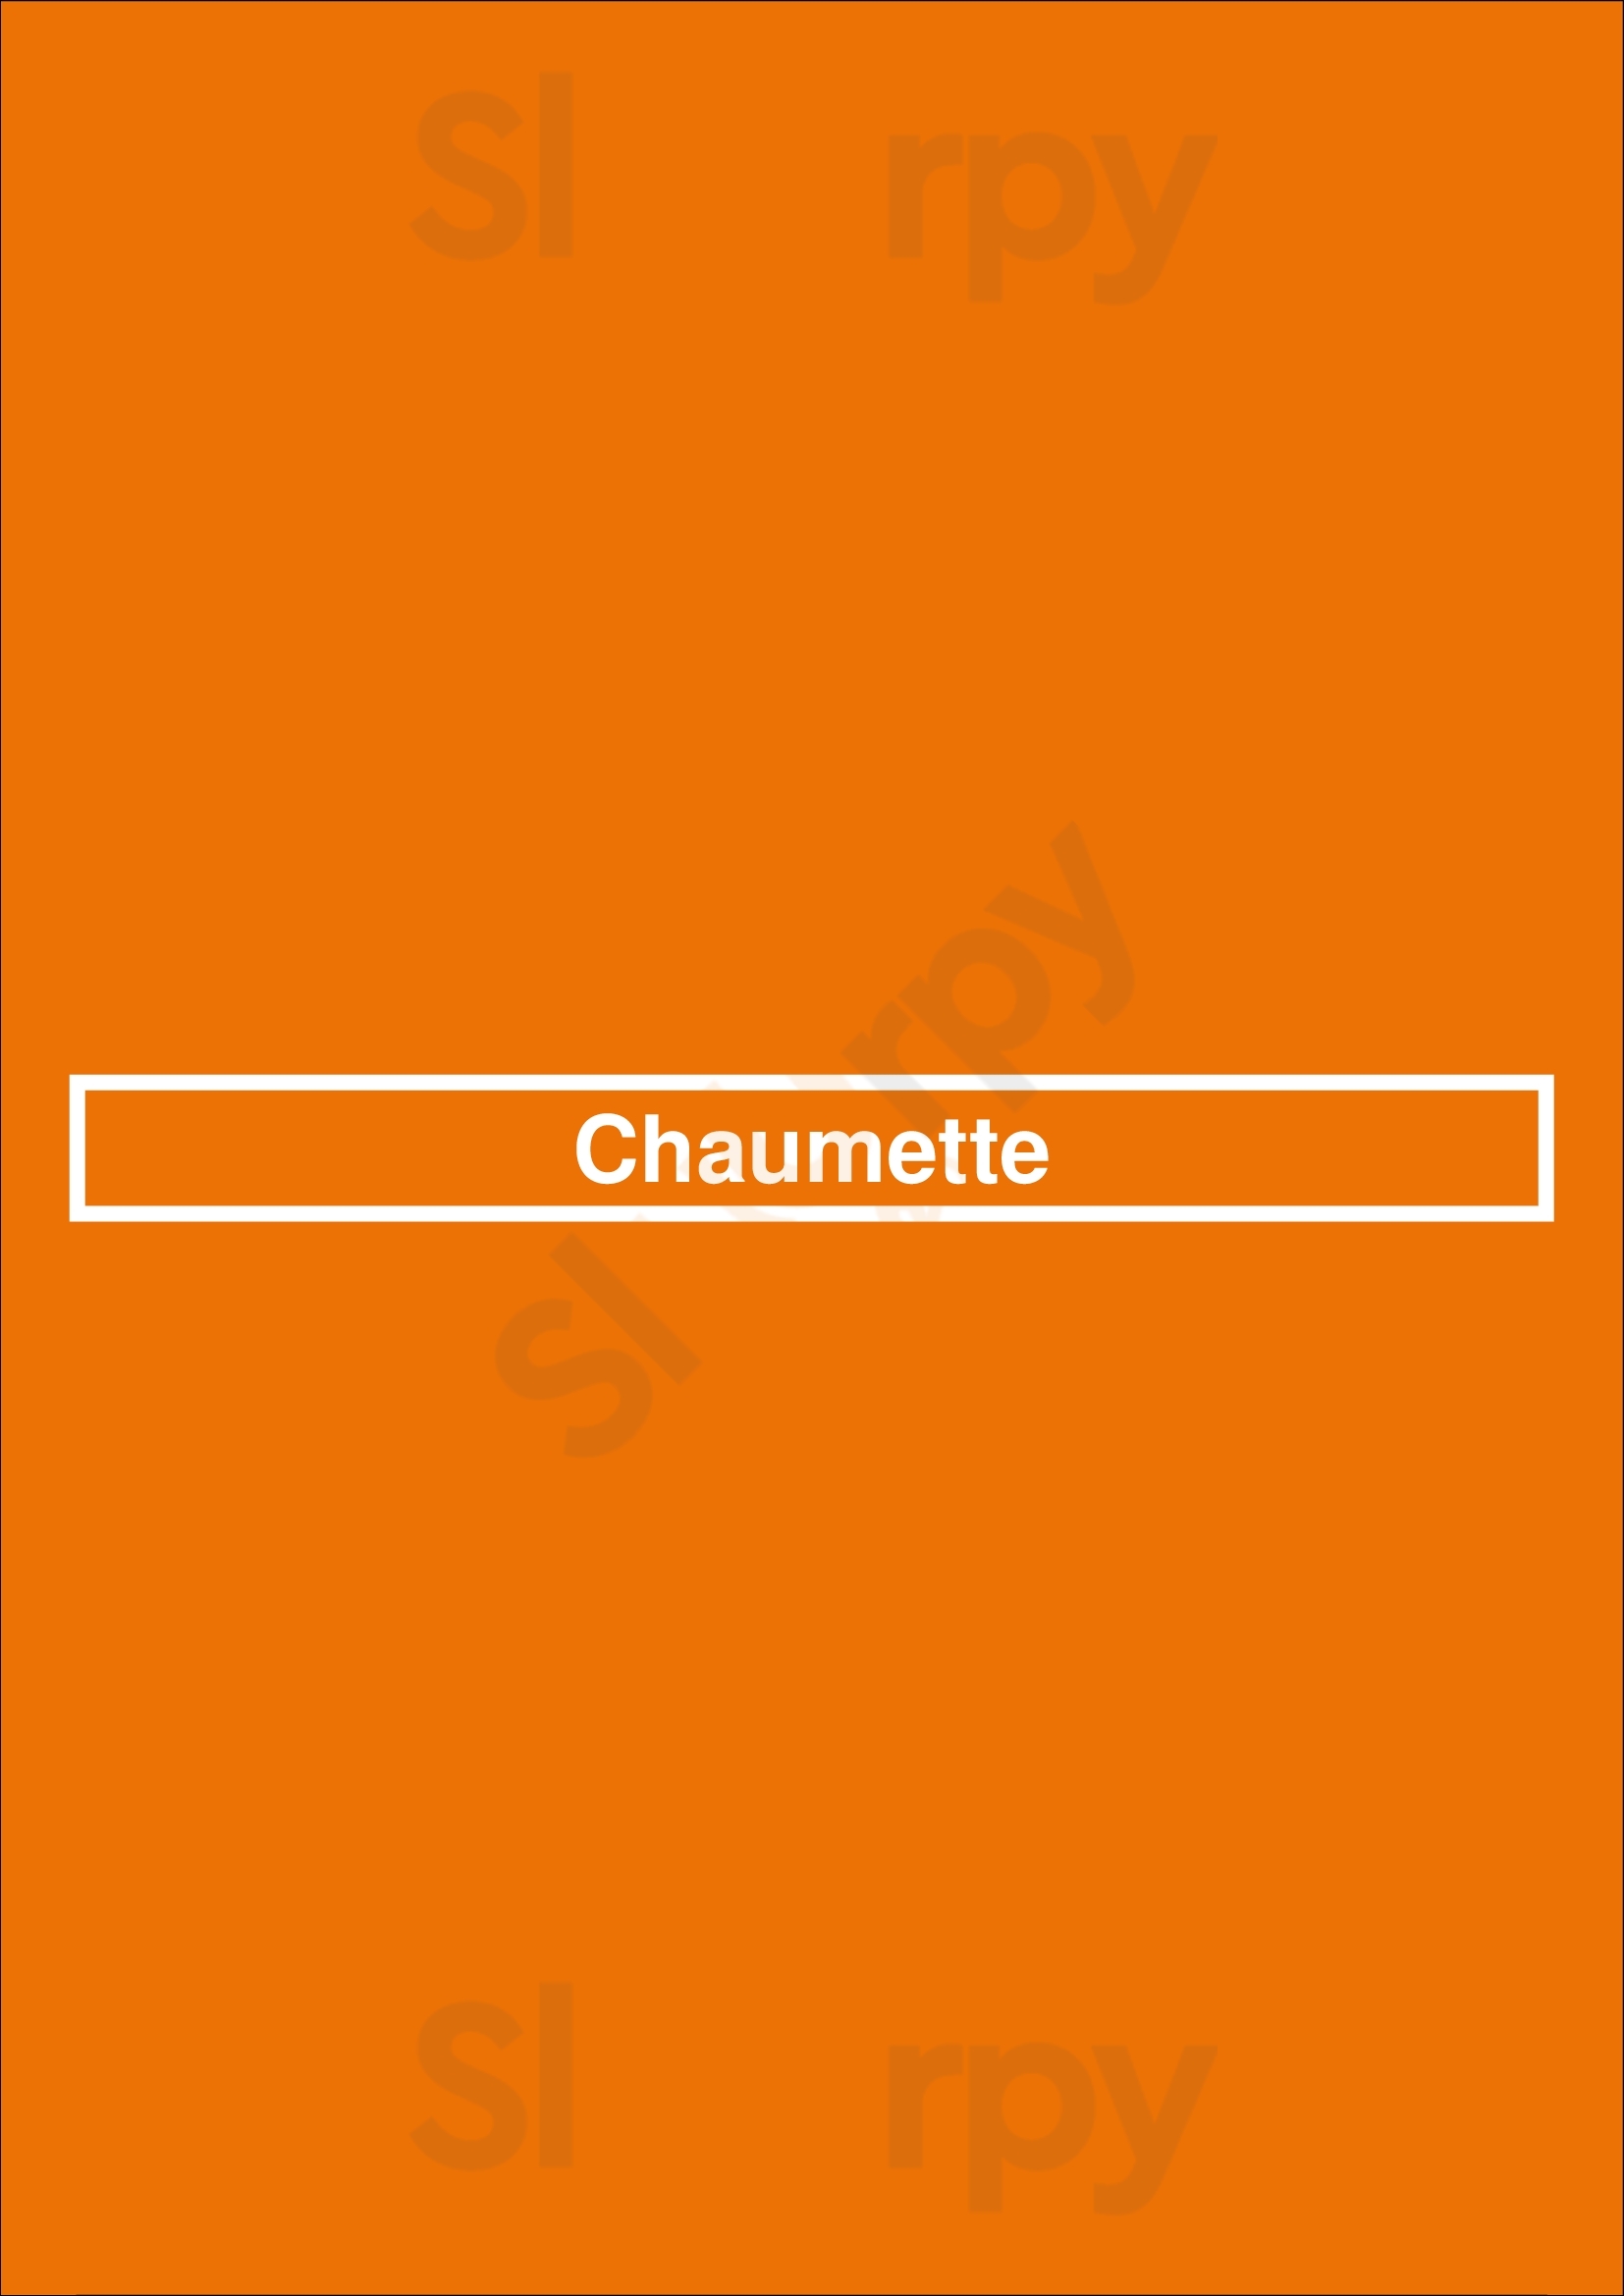 Chaumette Paris Menu - 1